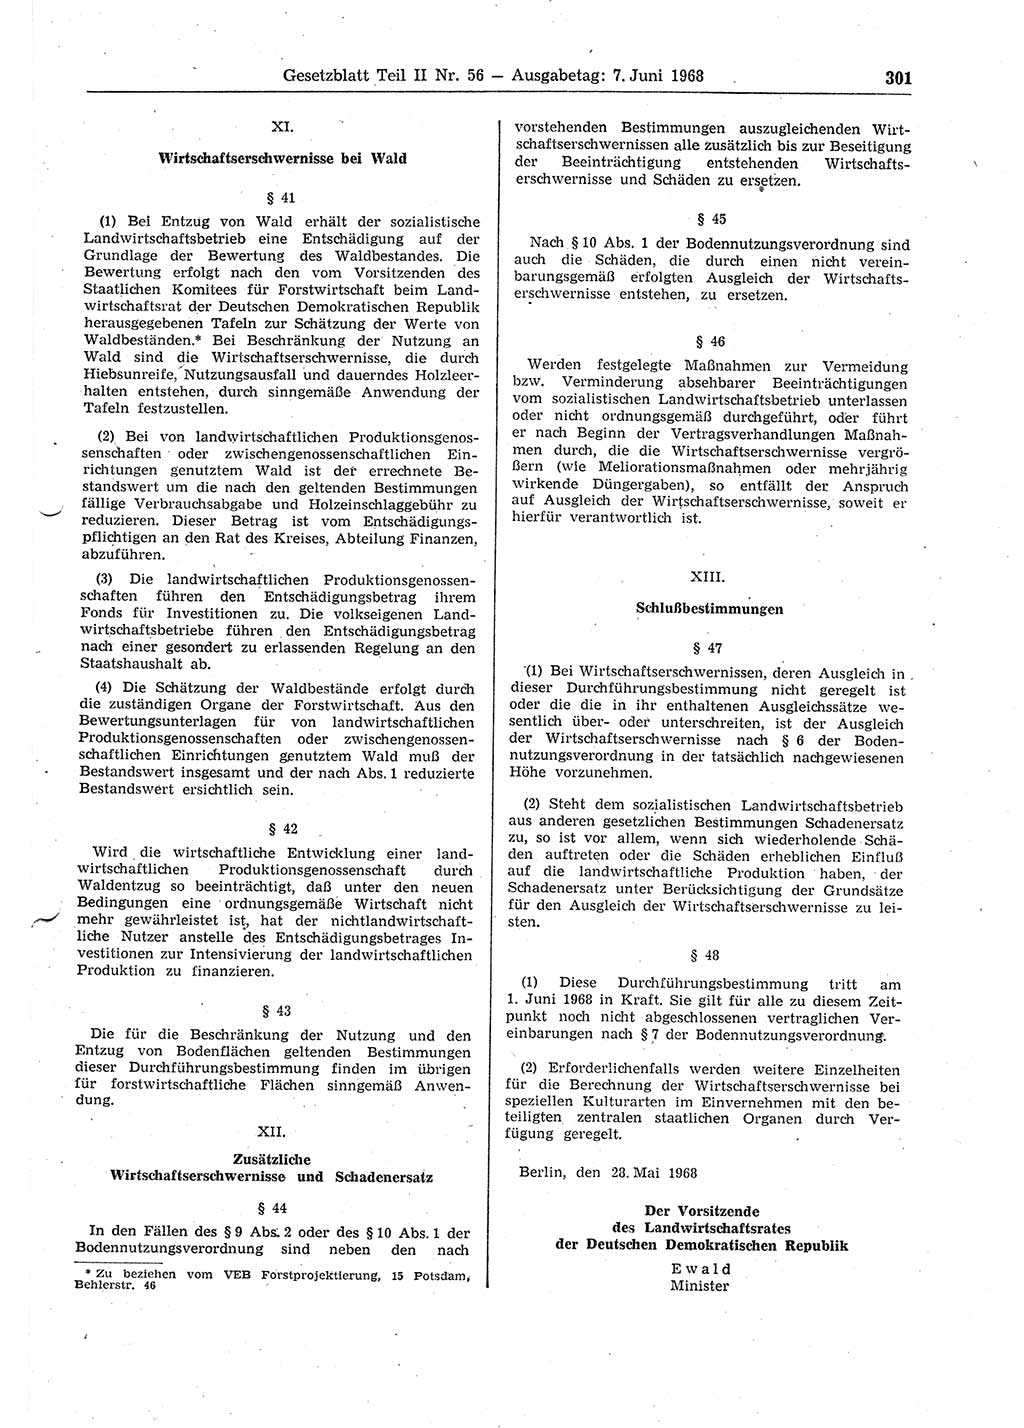 Gesetzblatt (GBl.) der Deutschen Demokratischen Republik (DDR) Teil ⅠⅠ 1968, Seite 301 (GBl. DDR ⅠⅠ 1968, S. 301)